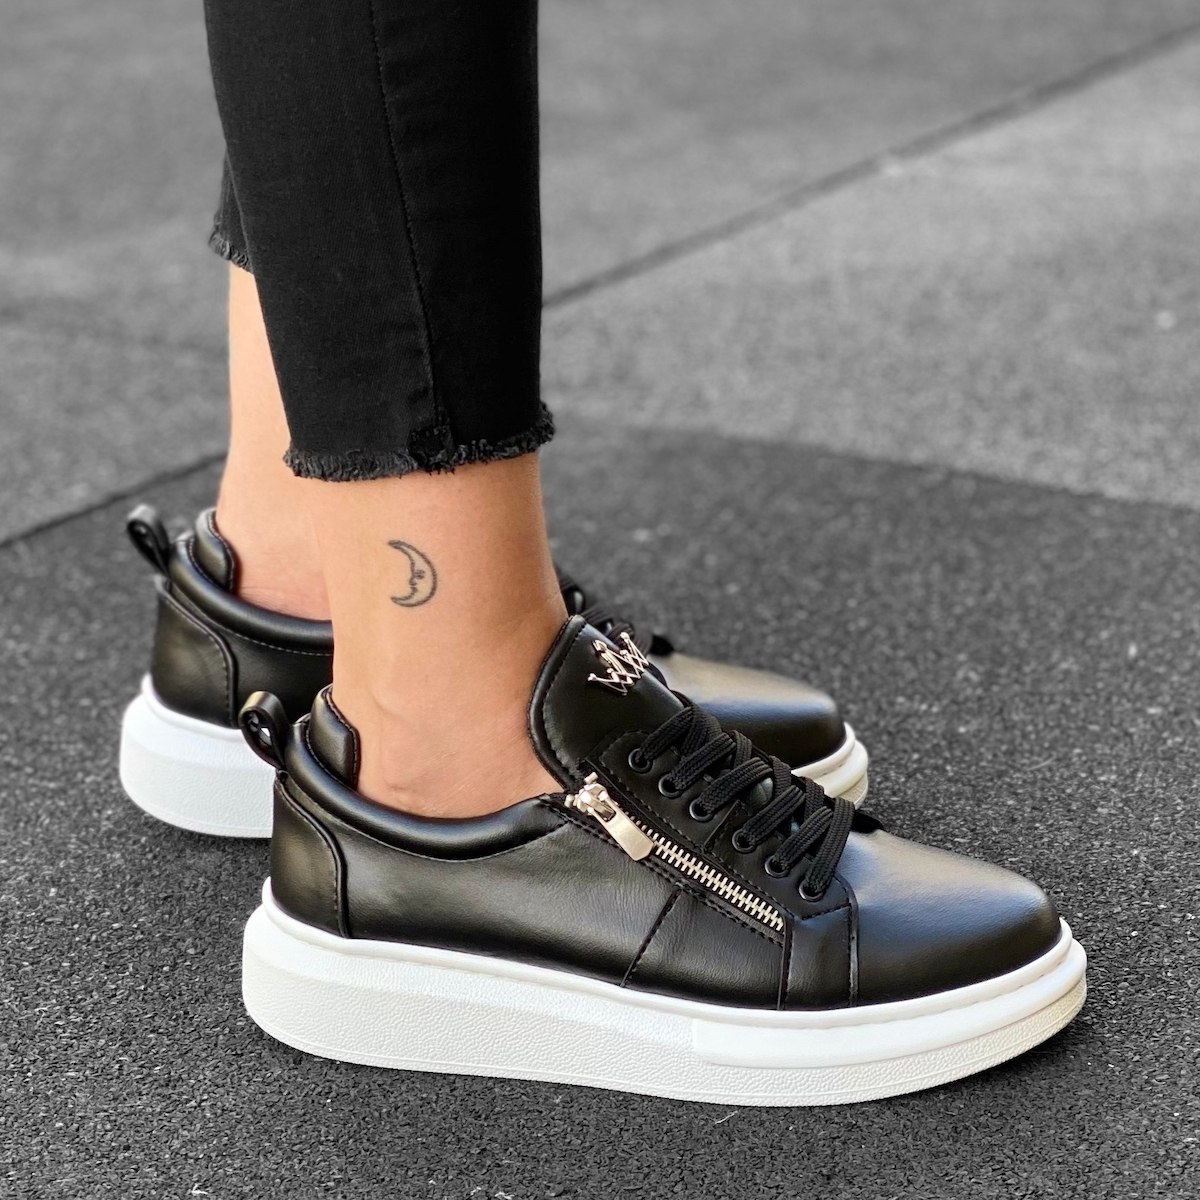 Damen Hohe Sohle Sneaker mit Reißverschlüssen in Schwarz und Weiß | Martin Valen